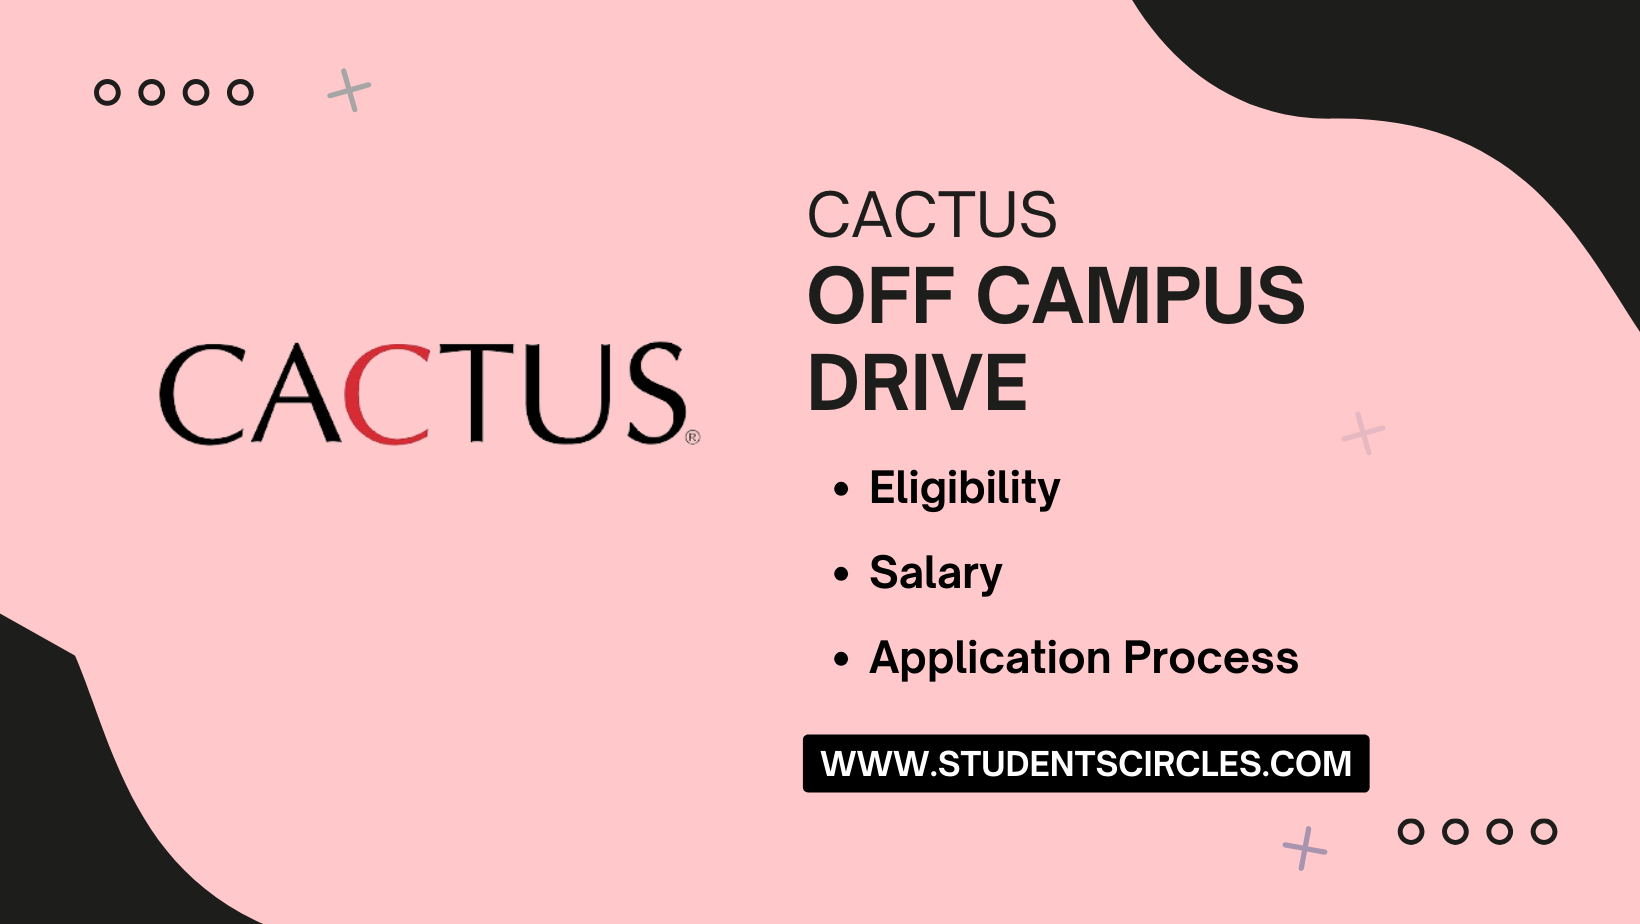 CACTUS Off Campus Drive